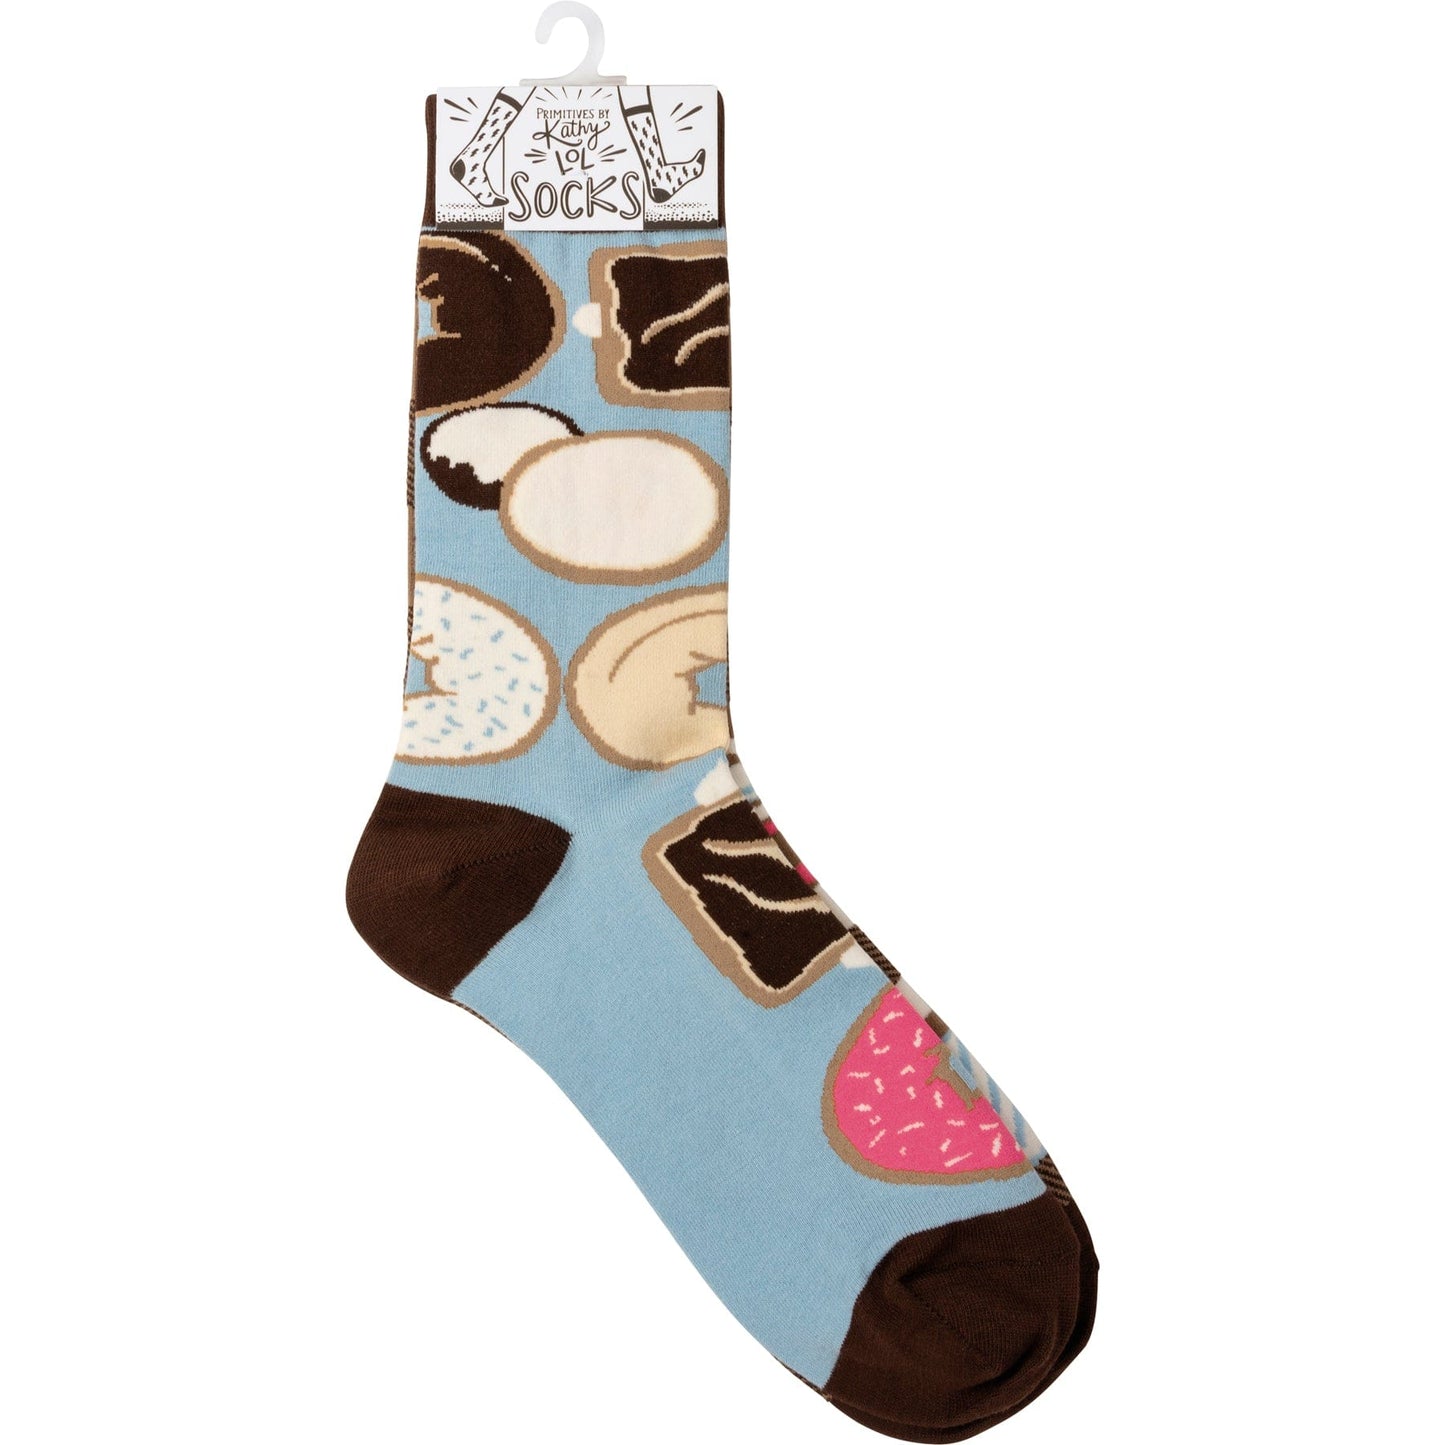 Socks One Size Fits Most Socks - Coffee & Donuts PBK-108529